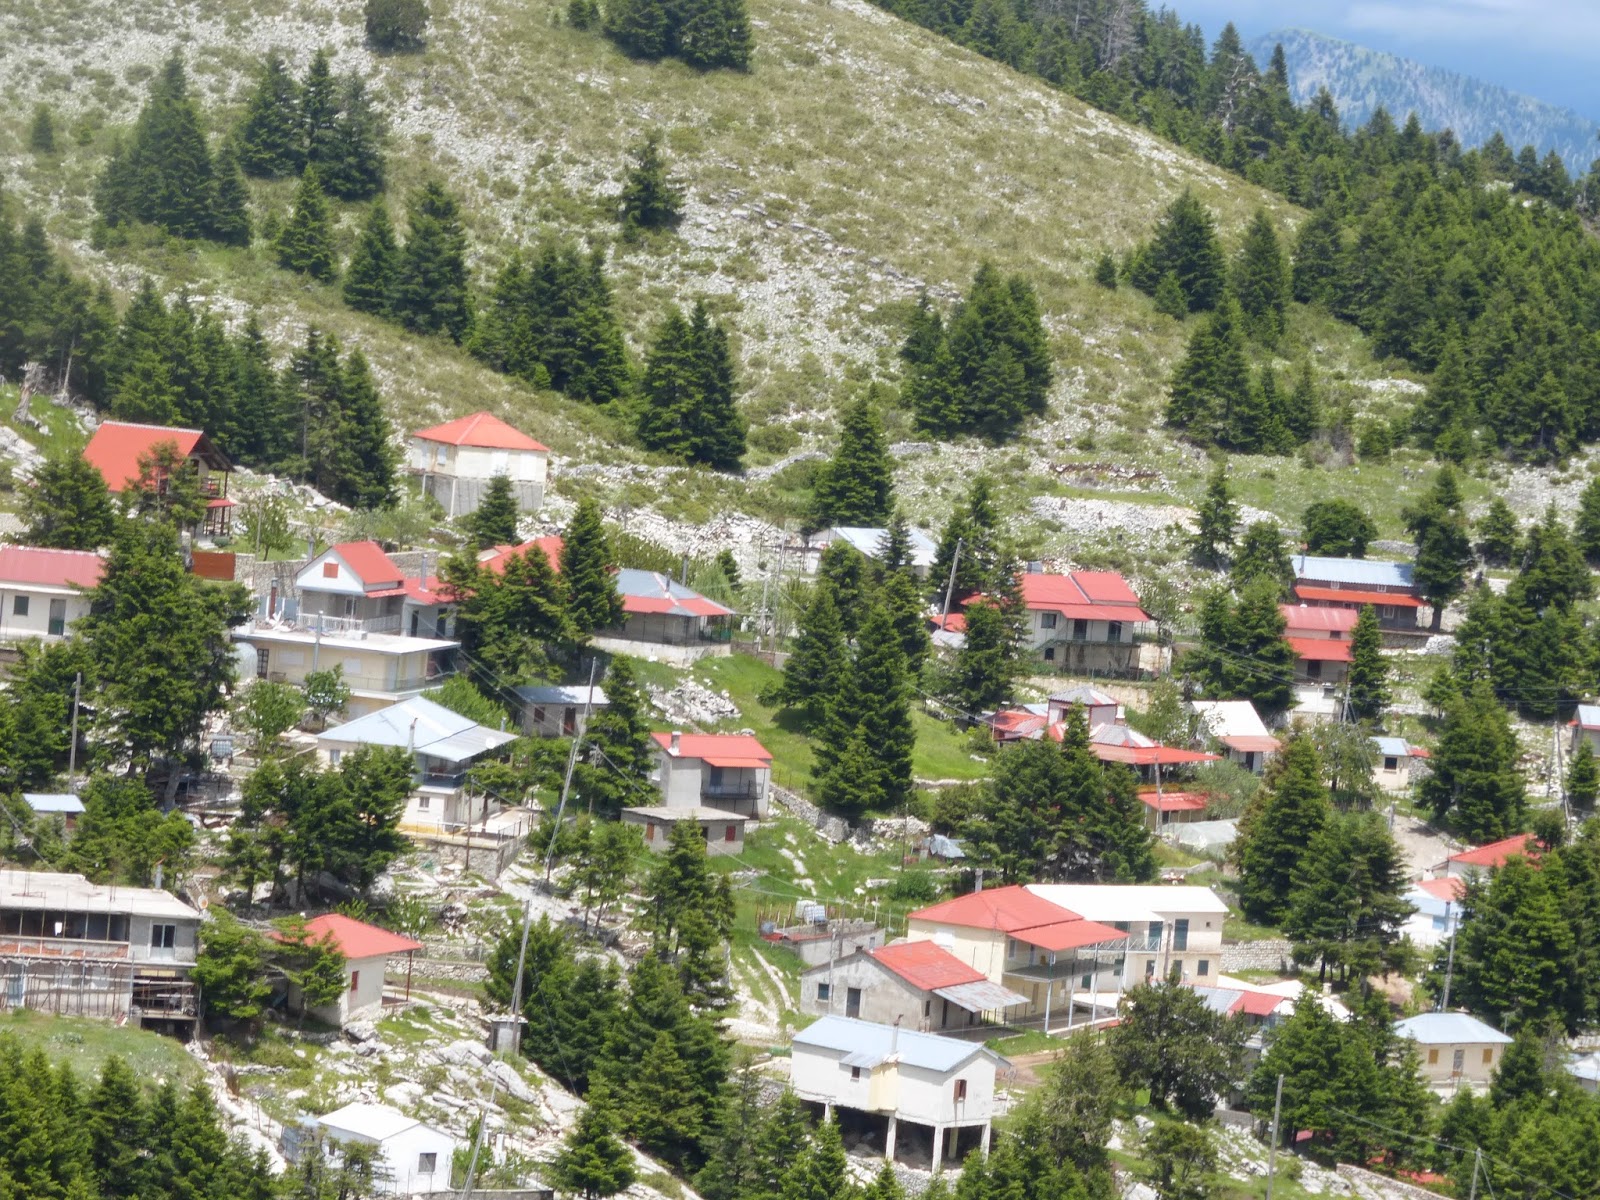 Αφιέρωμα στην Αρέντα, το  χωριό των 1500μ υψόμετρο